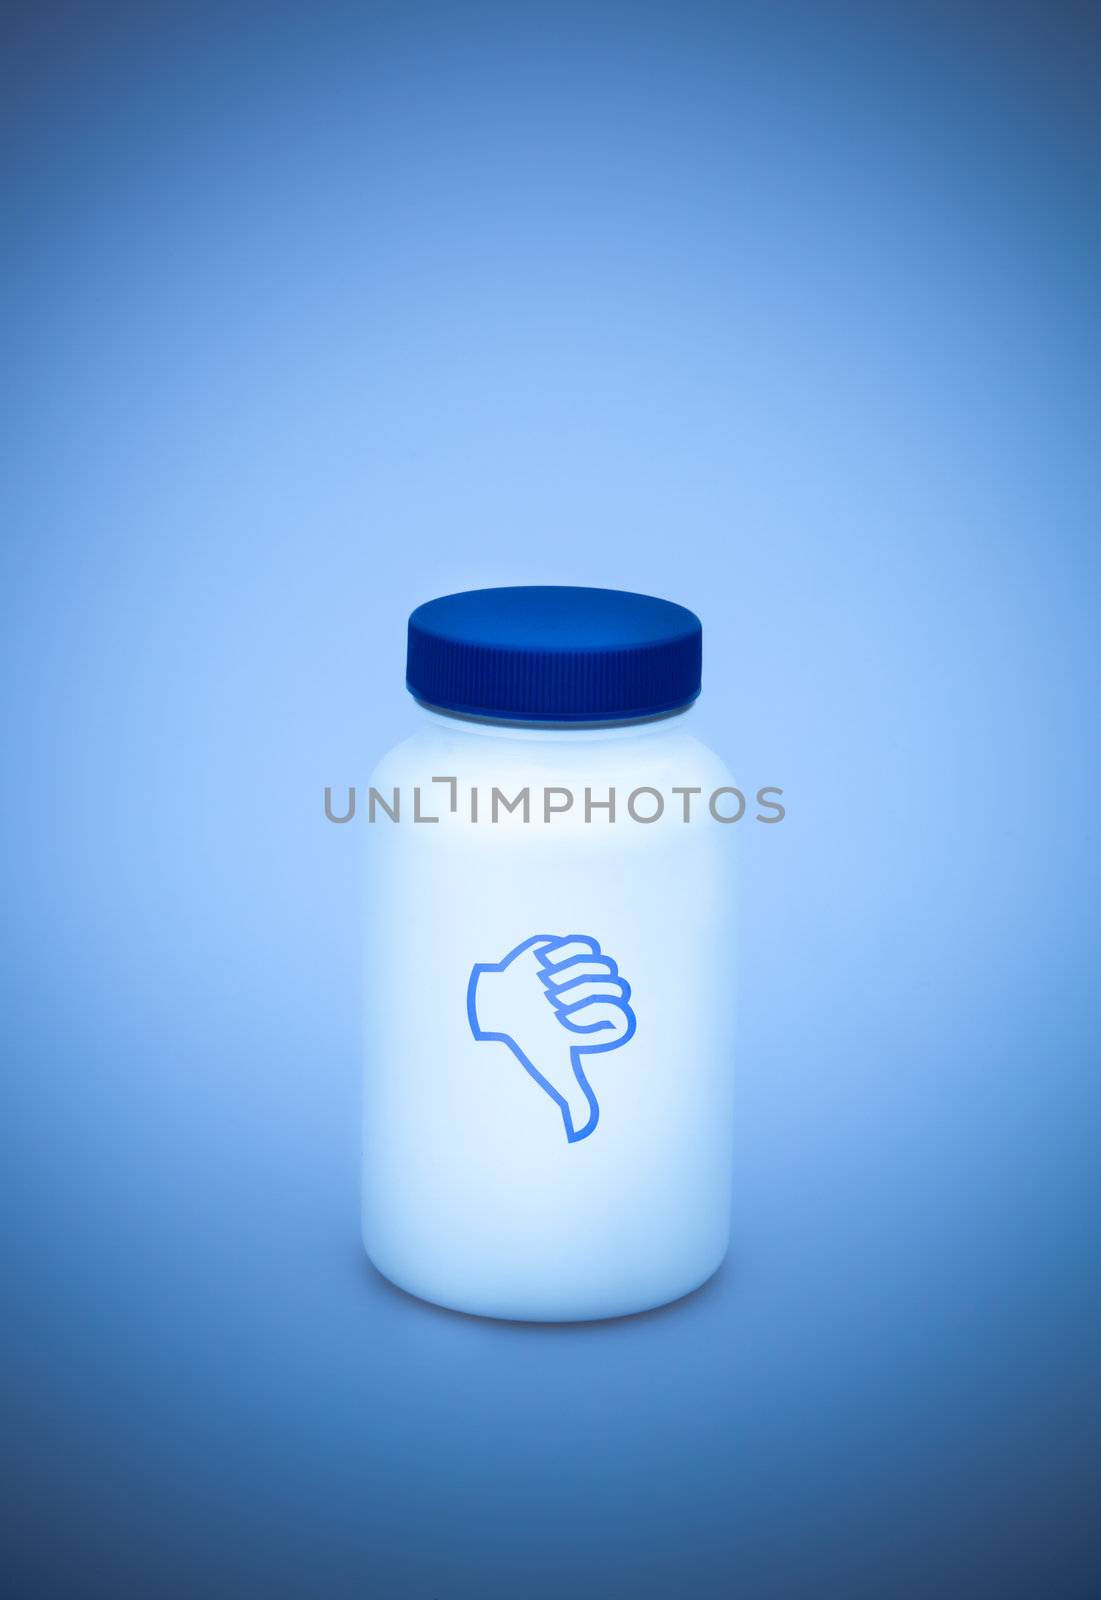 Small white medecine bottle